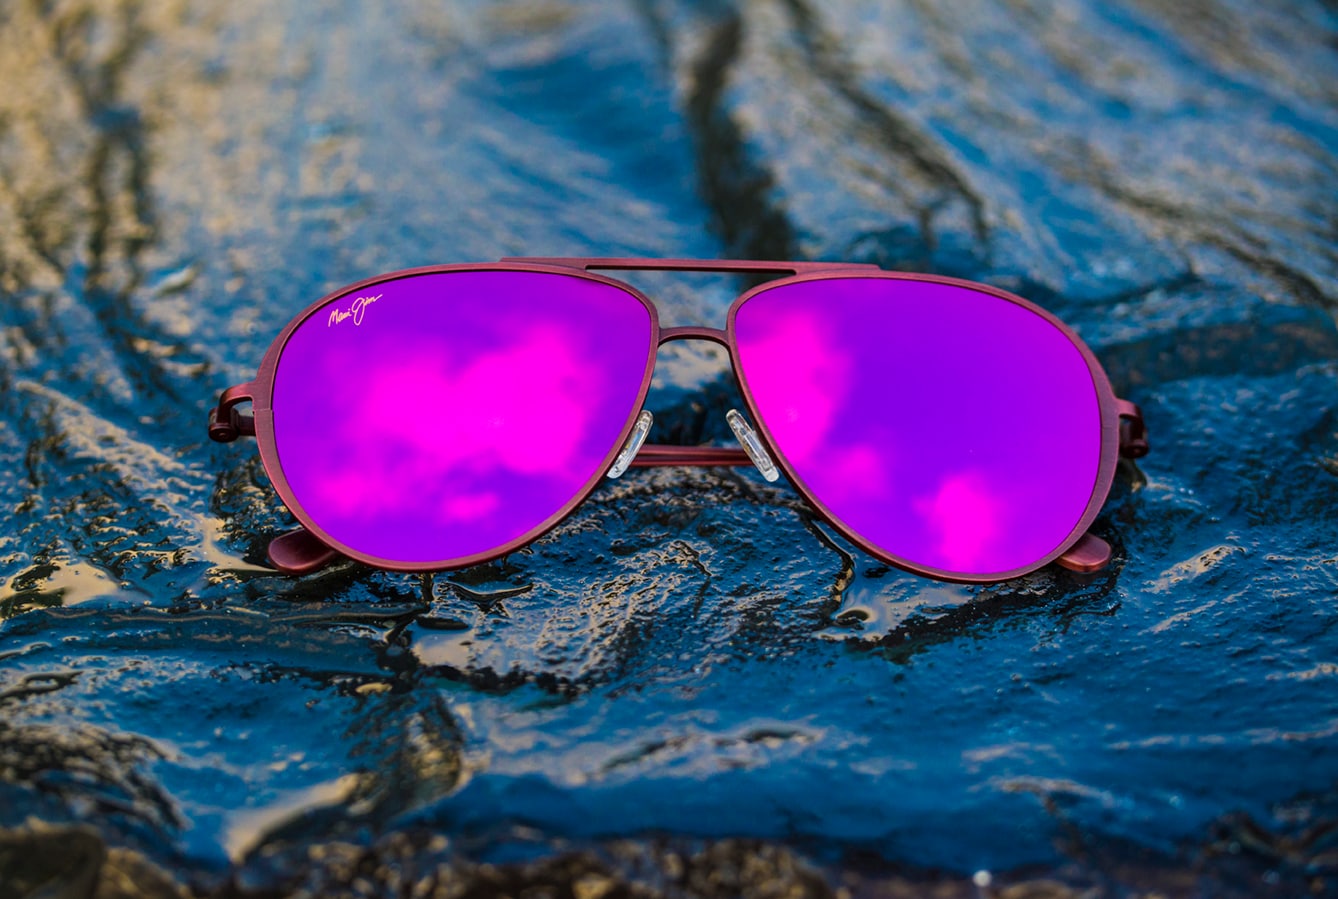 gafas de sol del modelo Shallows con lentes rosas expuestas sobre rocas mojadas